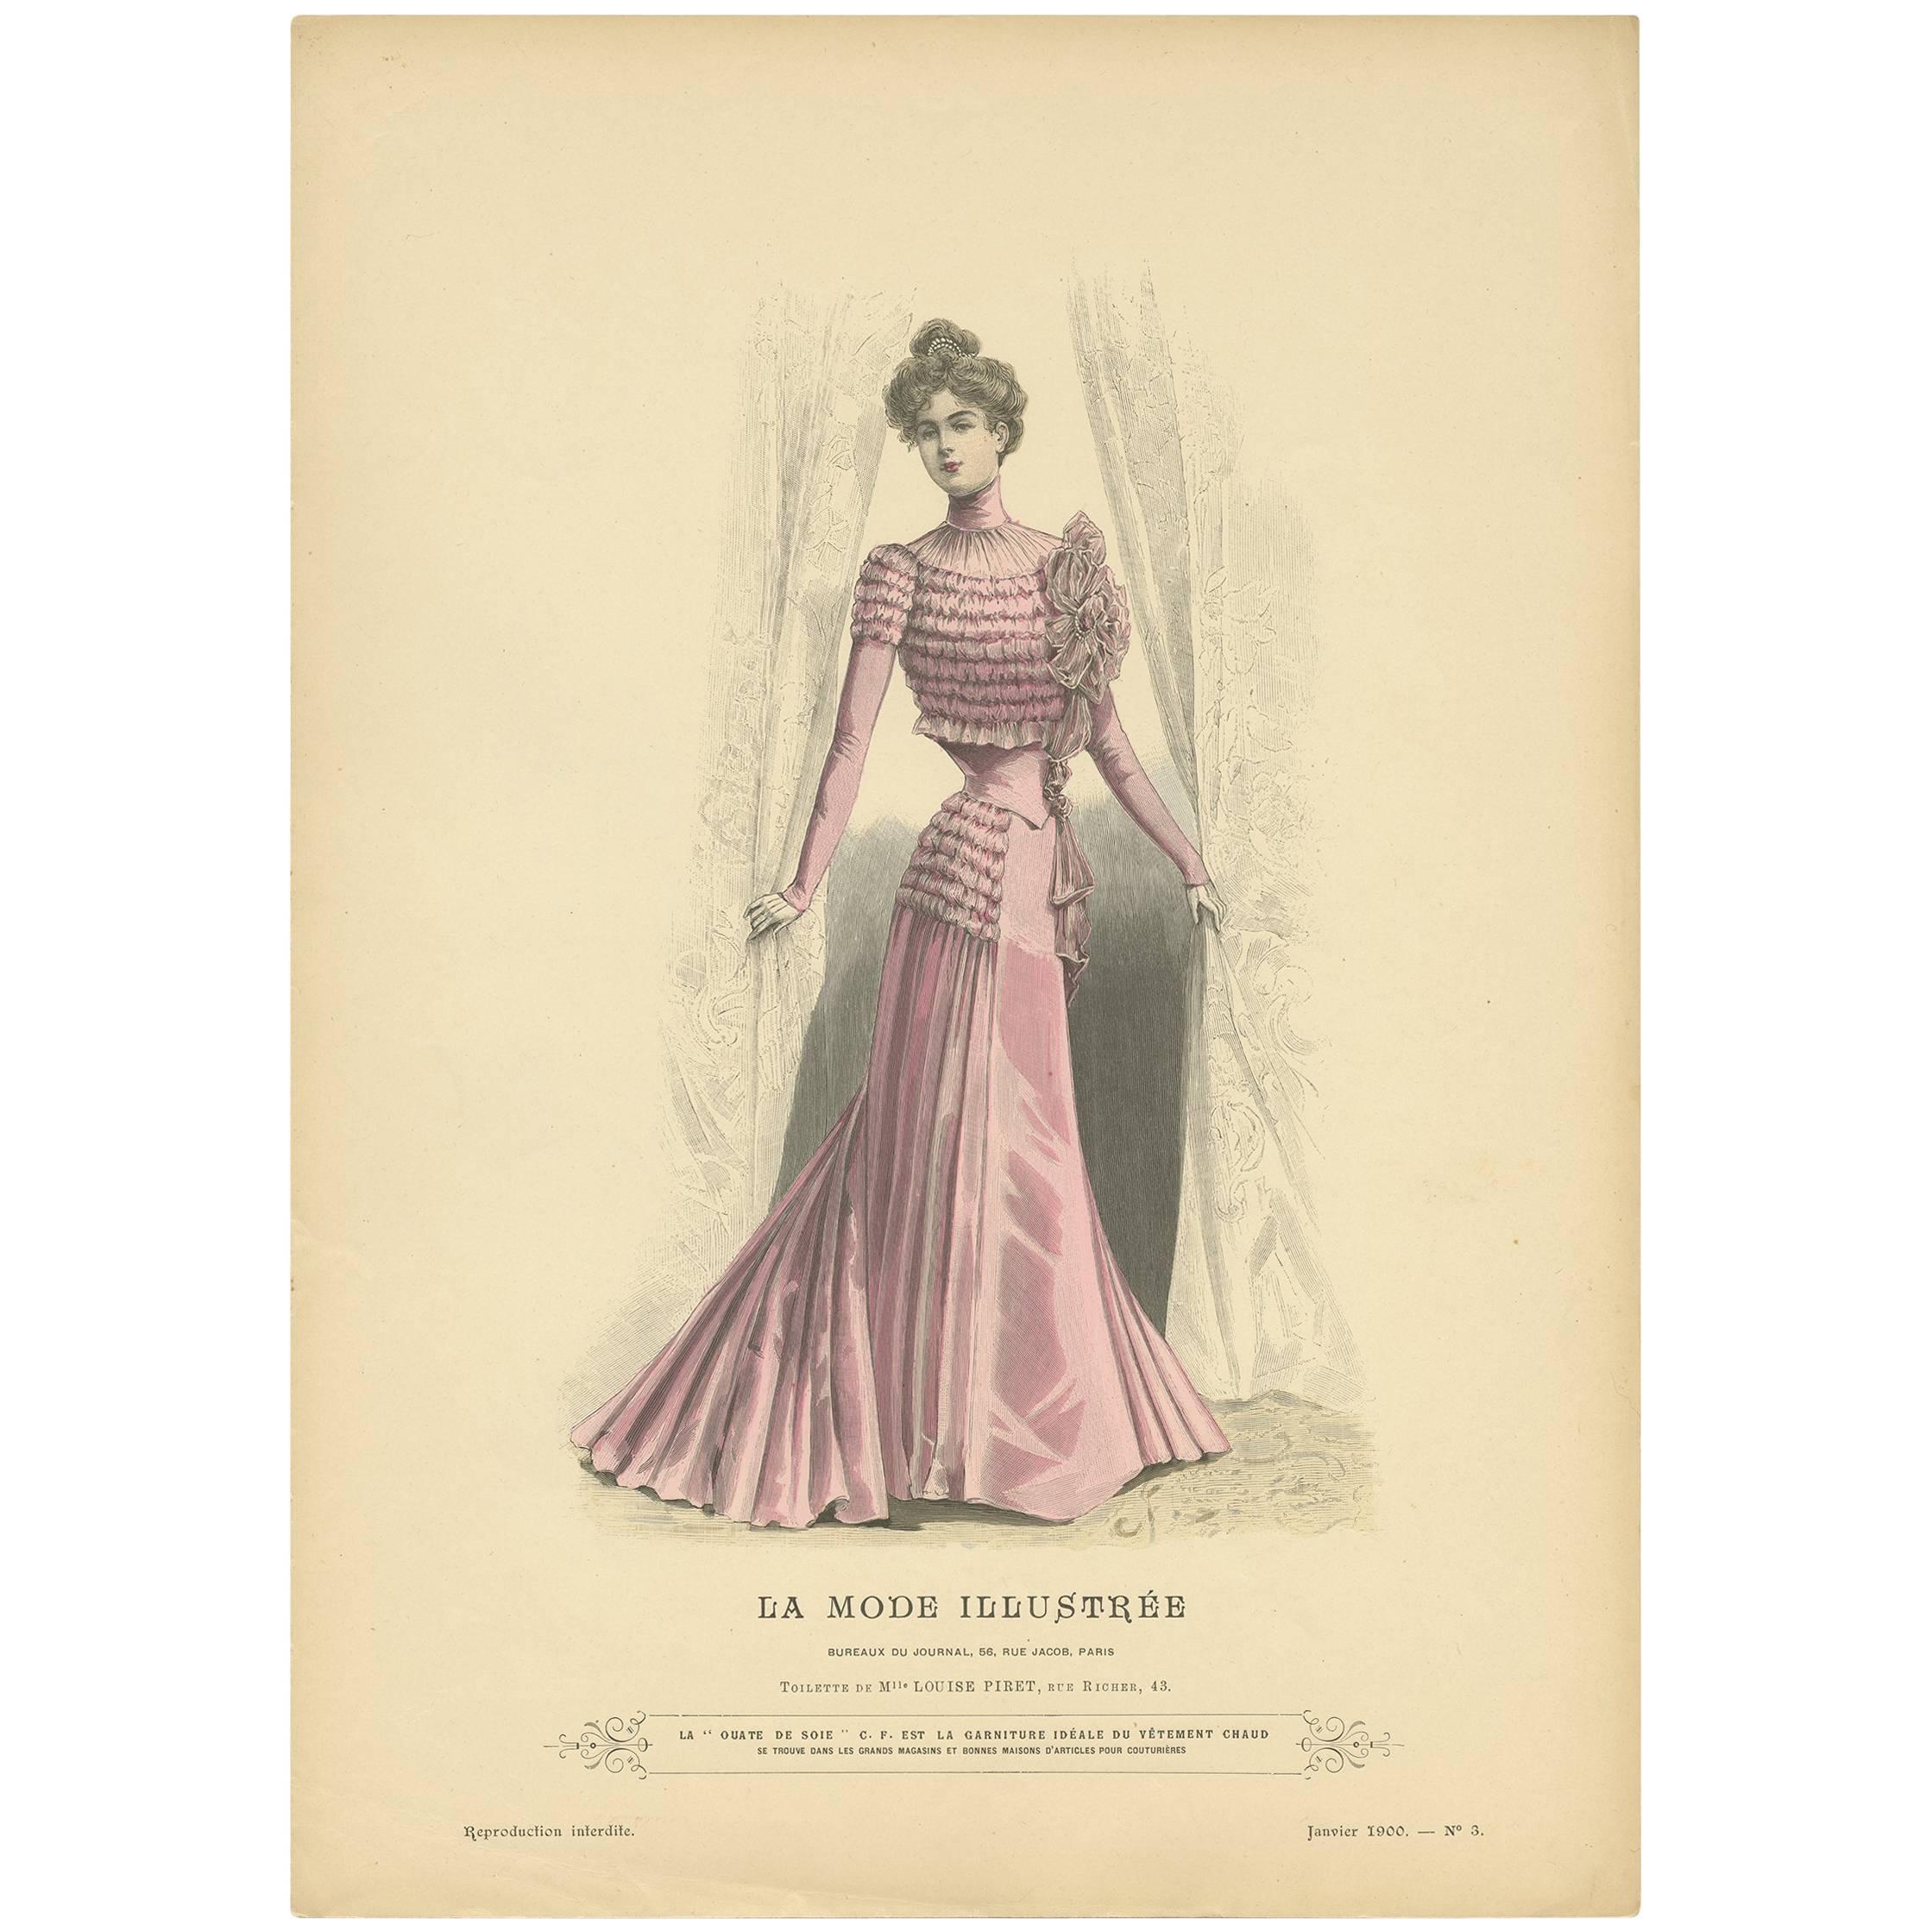 Antique Fashion Print Published by La Mode Illustrée, No. 3, 1900